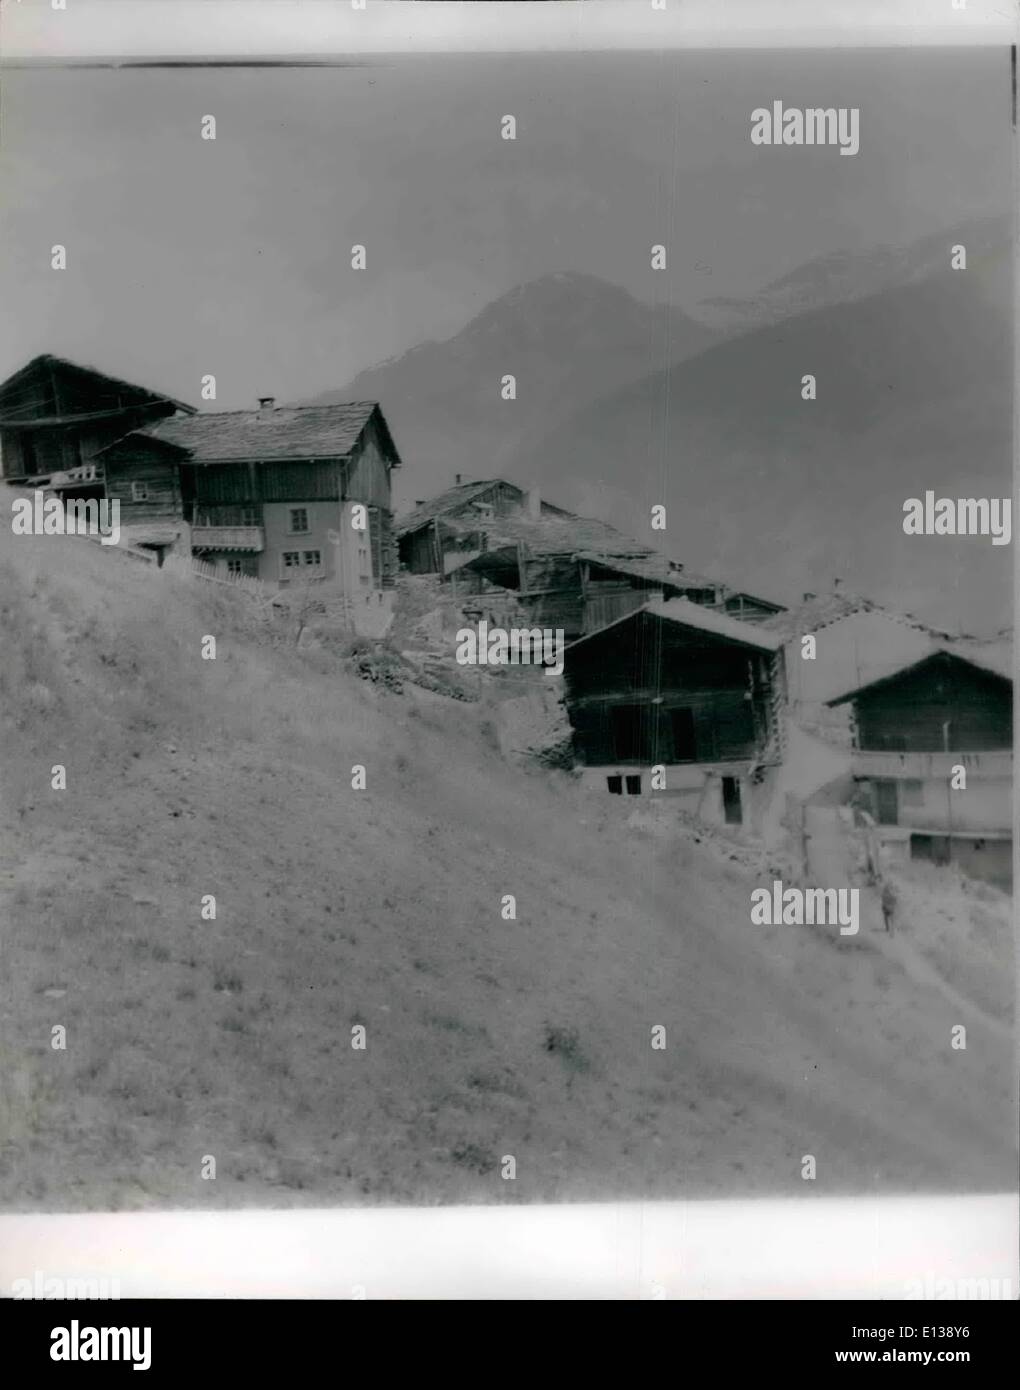 Febbraio 29, 2012 - Swiss città fantasma di vitale importanza Exquis Foto Stock